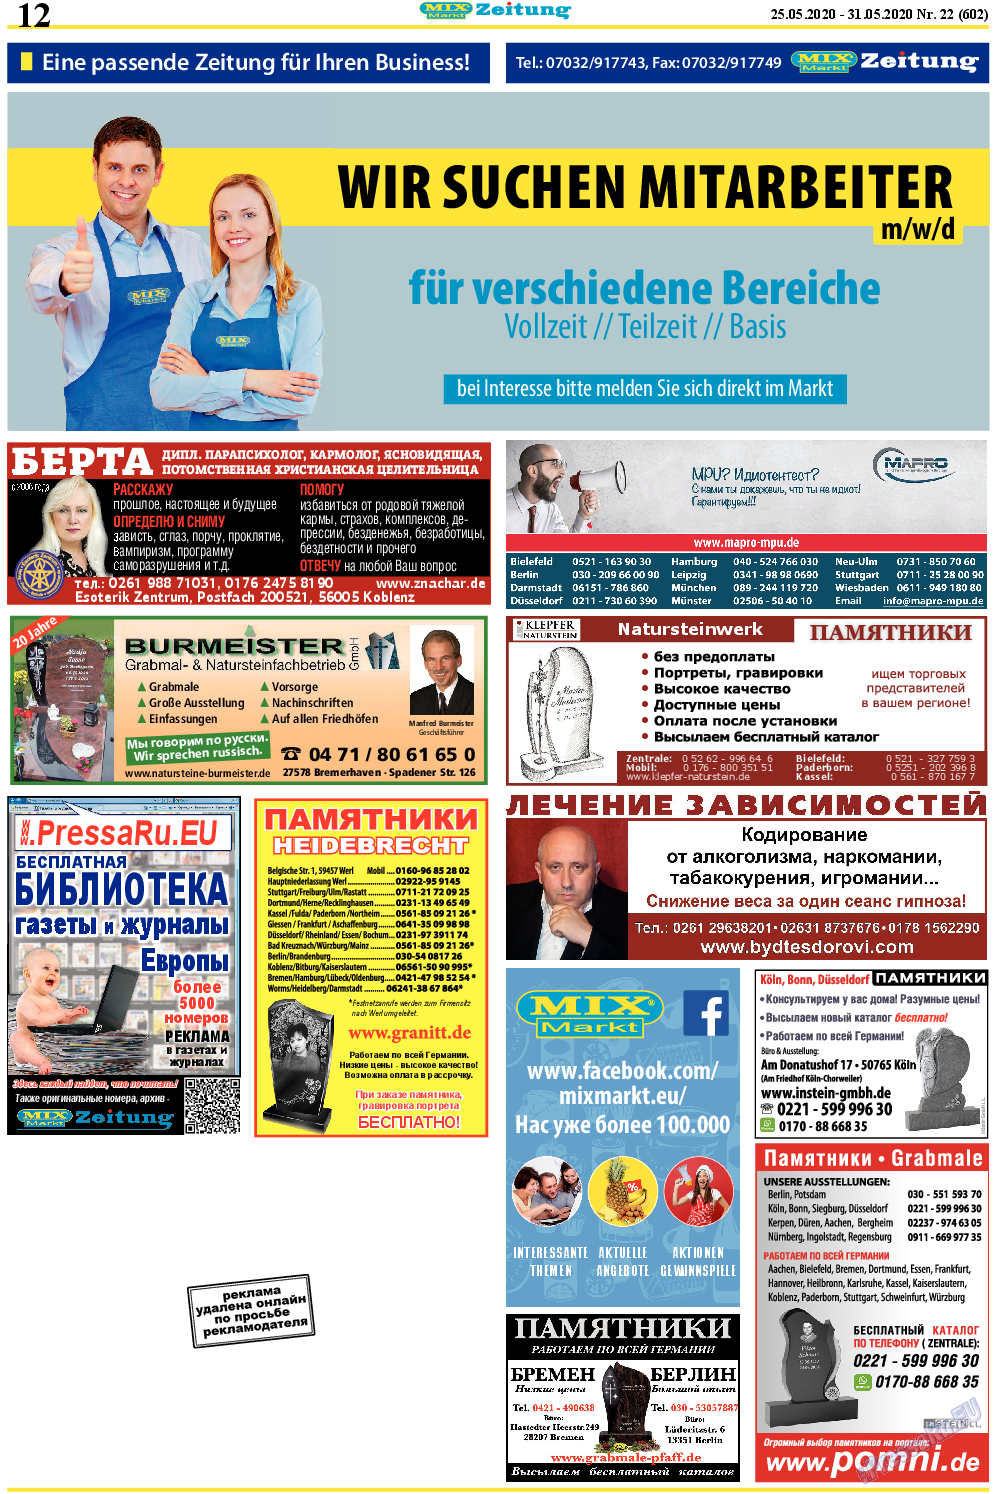 MIX-Markt Zeitung, газета. 2020 №22 стр.12